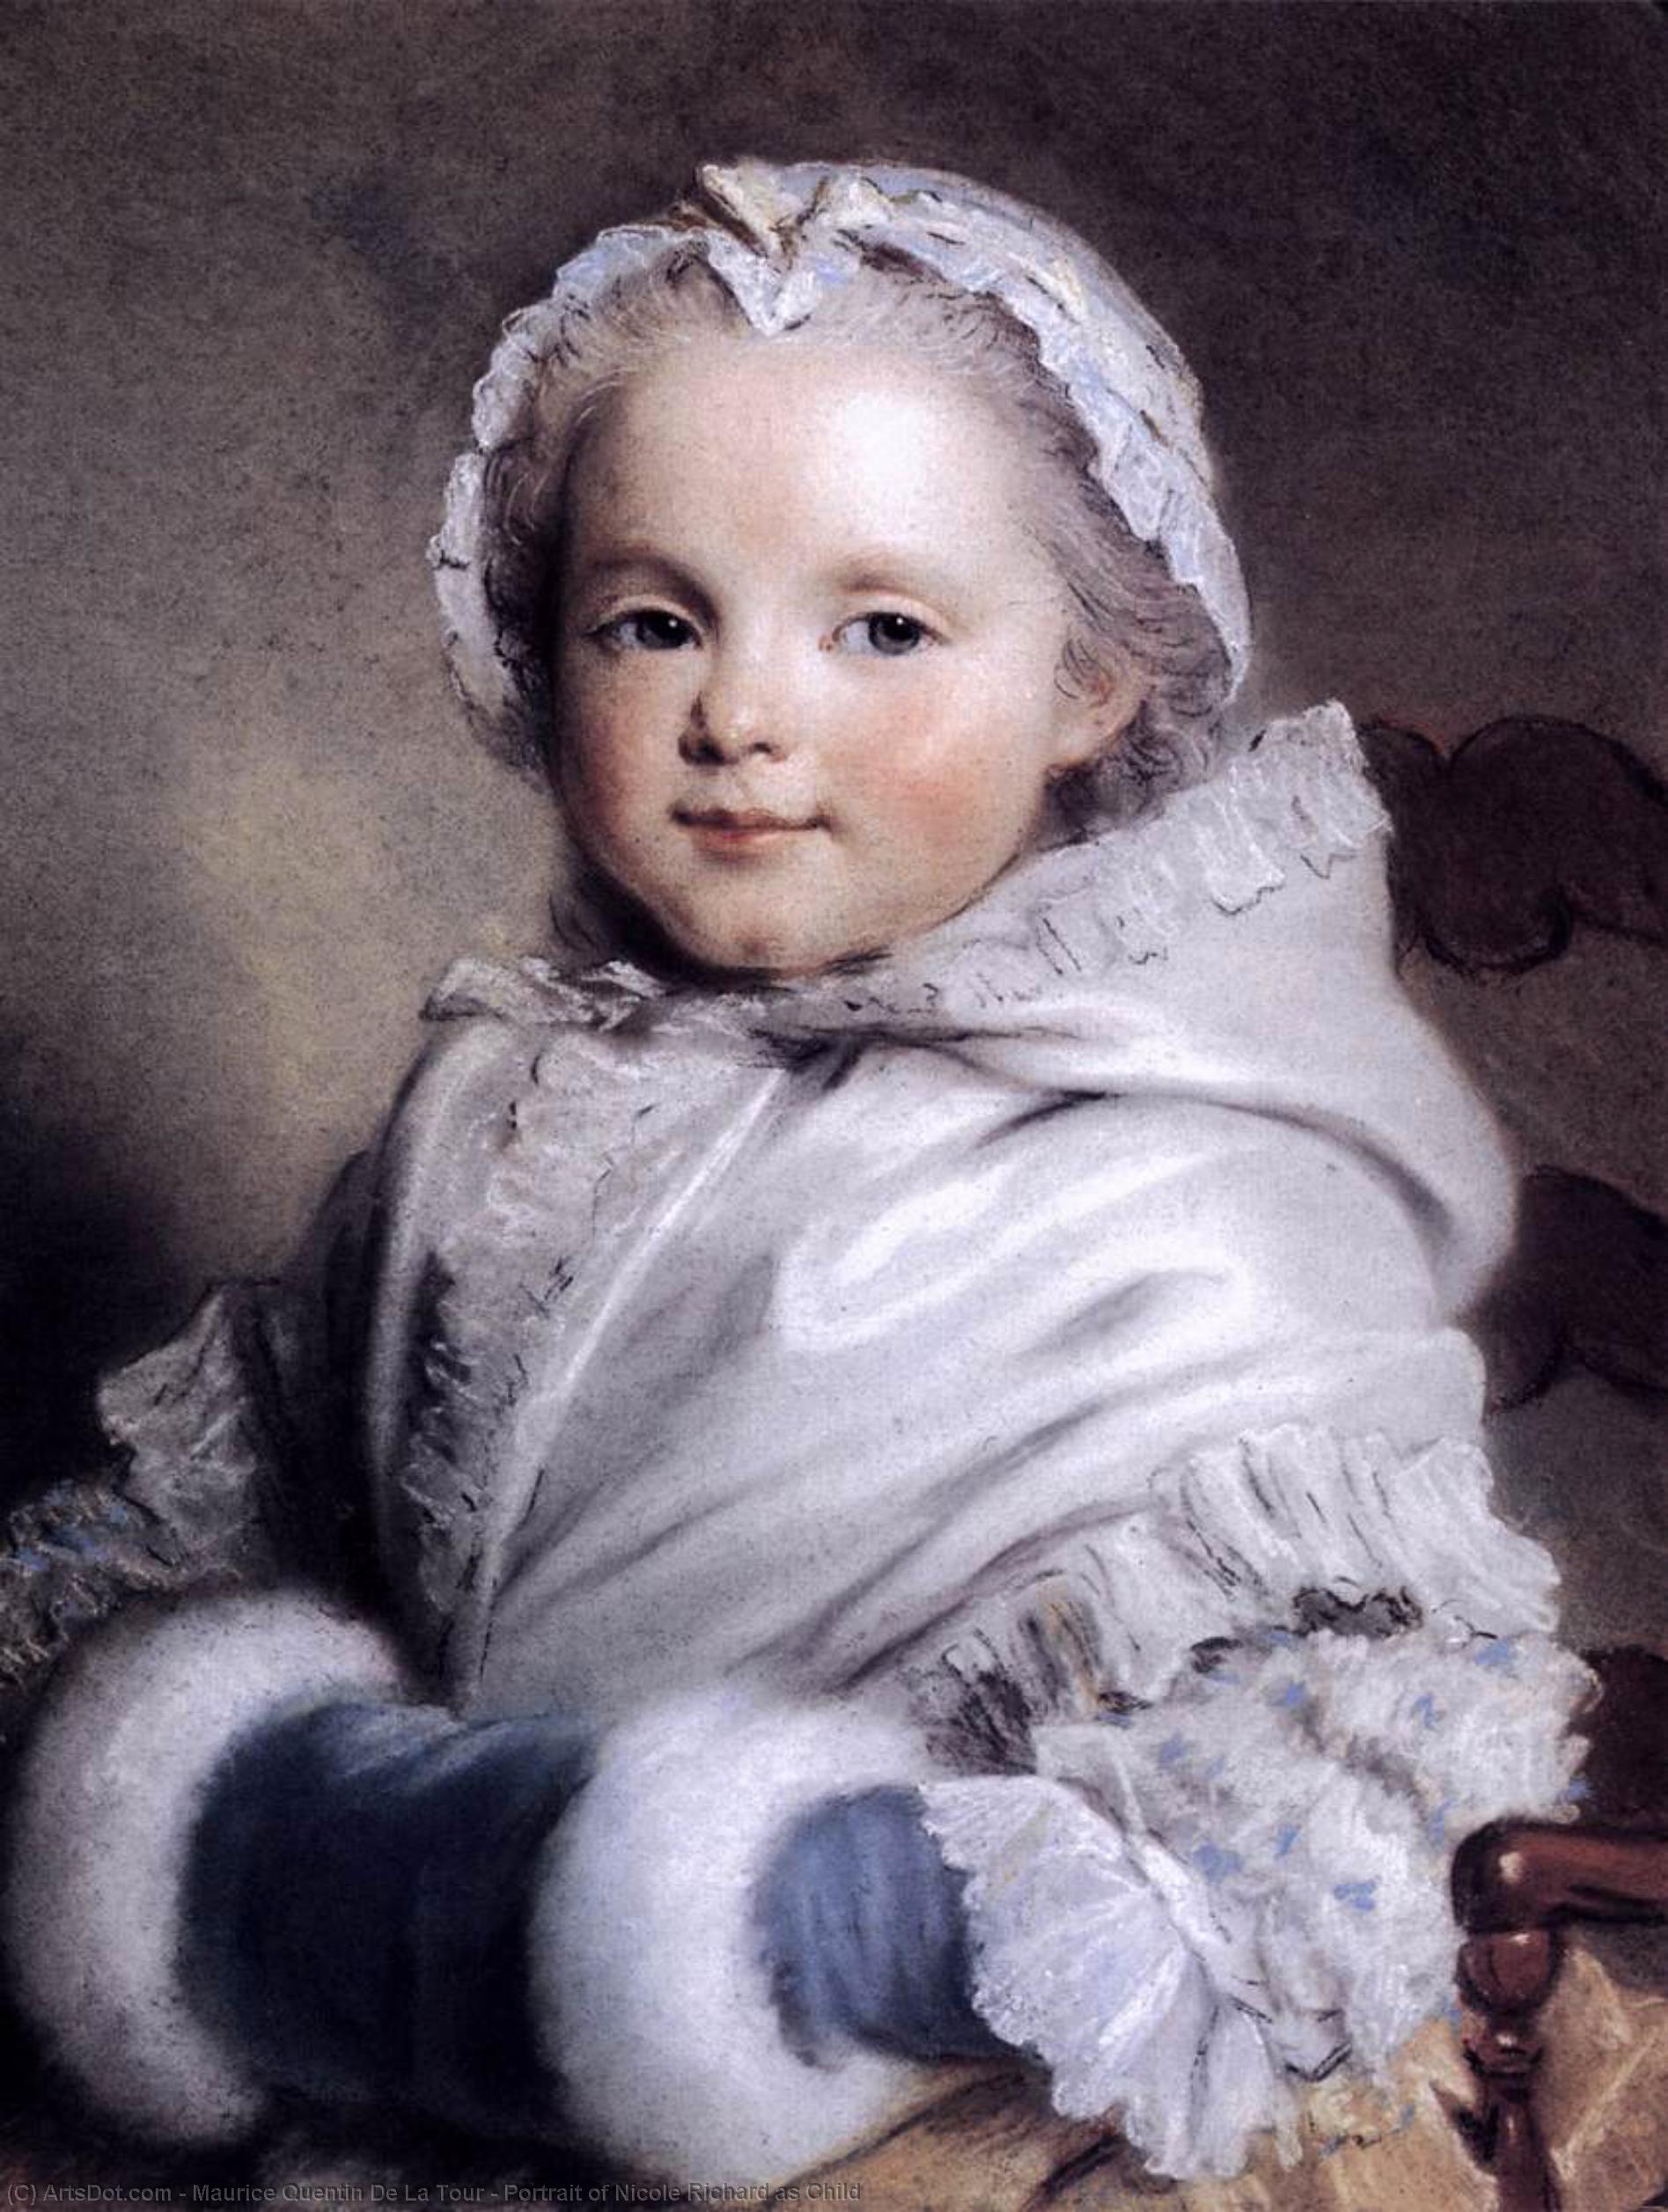 WikiOO.org - Enciklopedija likovnih umjetnosti - Slikarstvo, umjetnička djela Maurice Quentin De La Tour - Portrait of Nicole Richard as Child